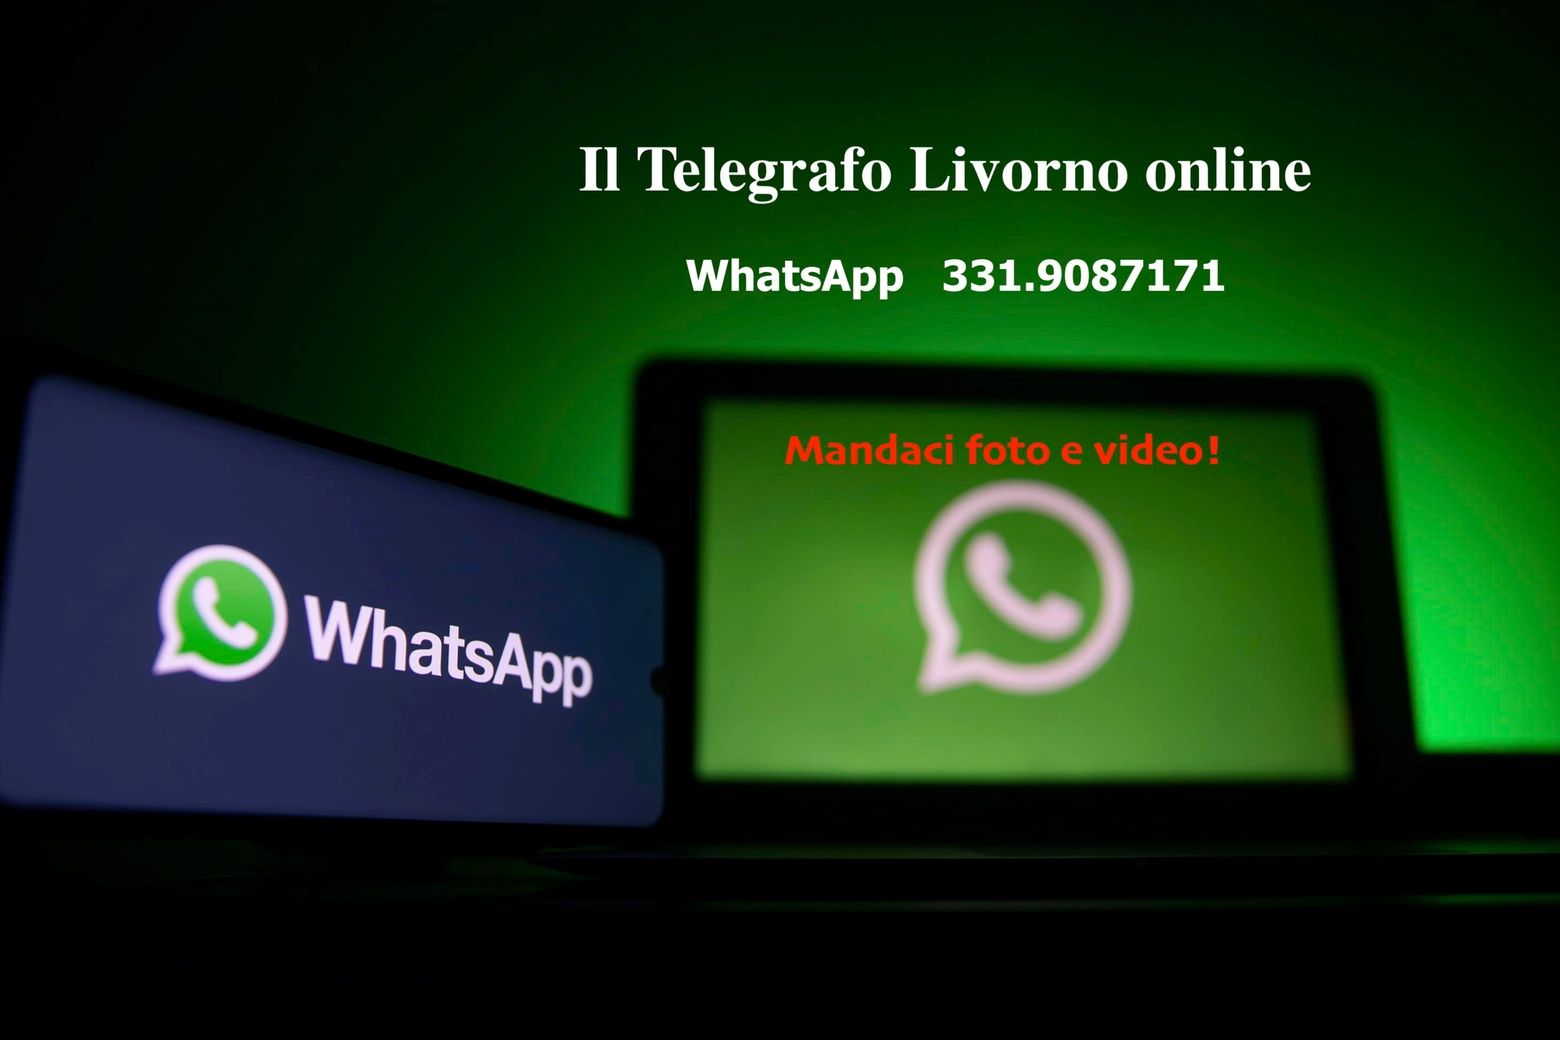 WhatsApp Telegrafo Livorno online